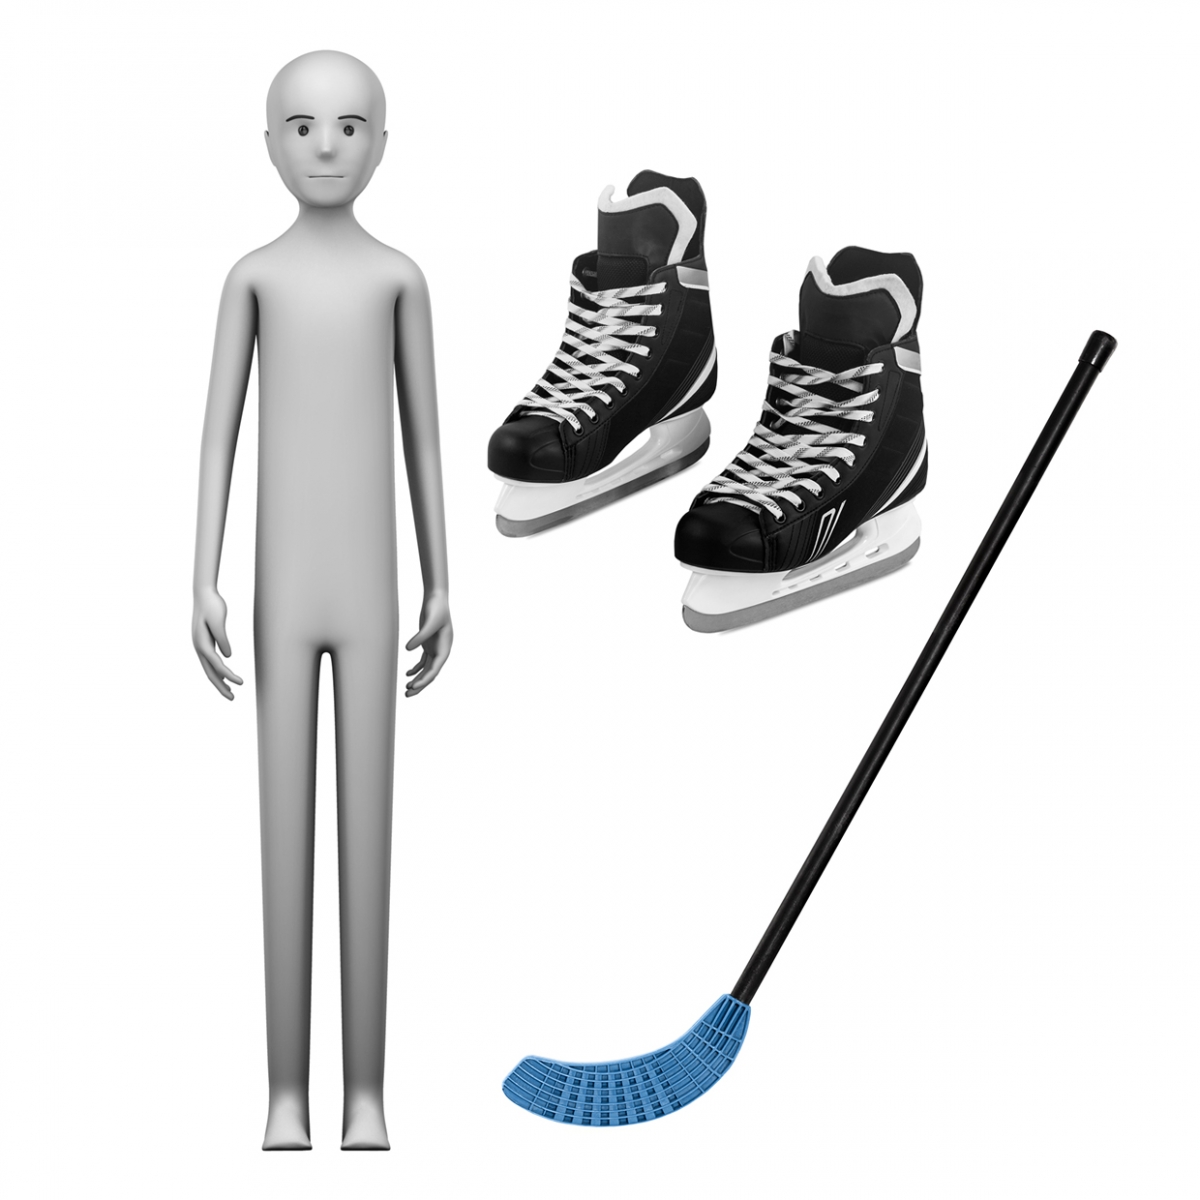 Imagen en la que se ve el concepto jugador de hockey hielo